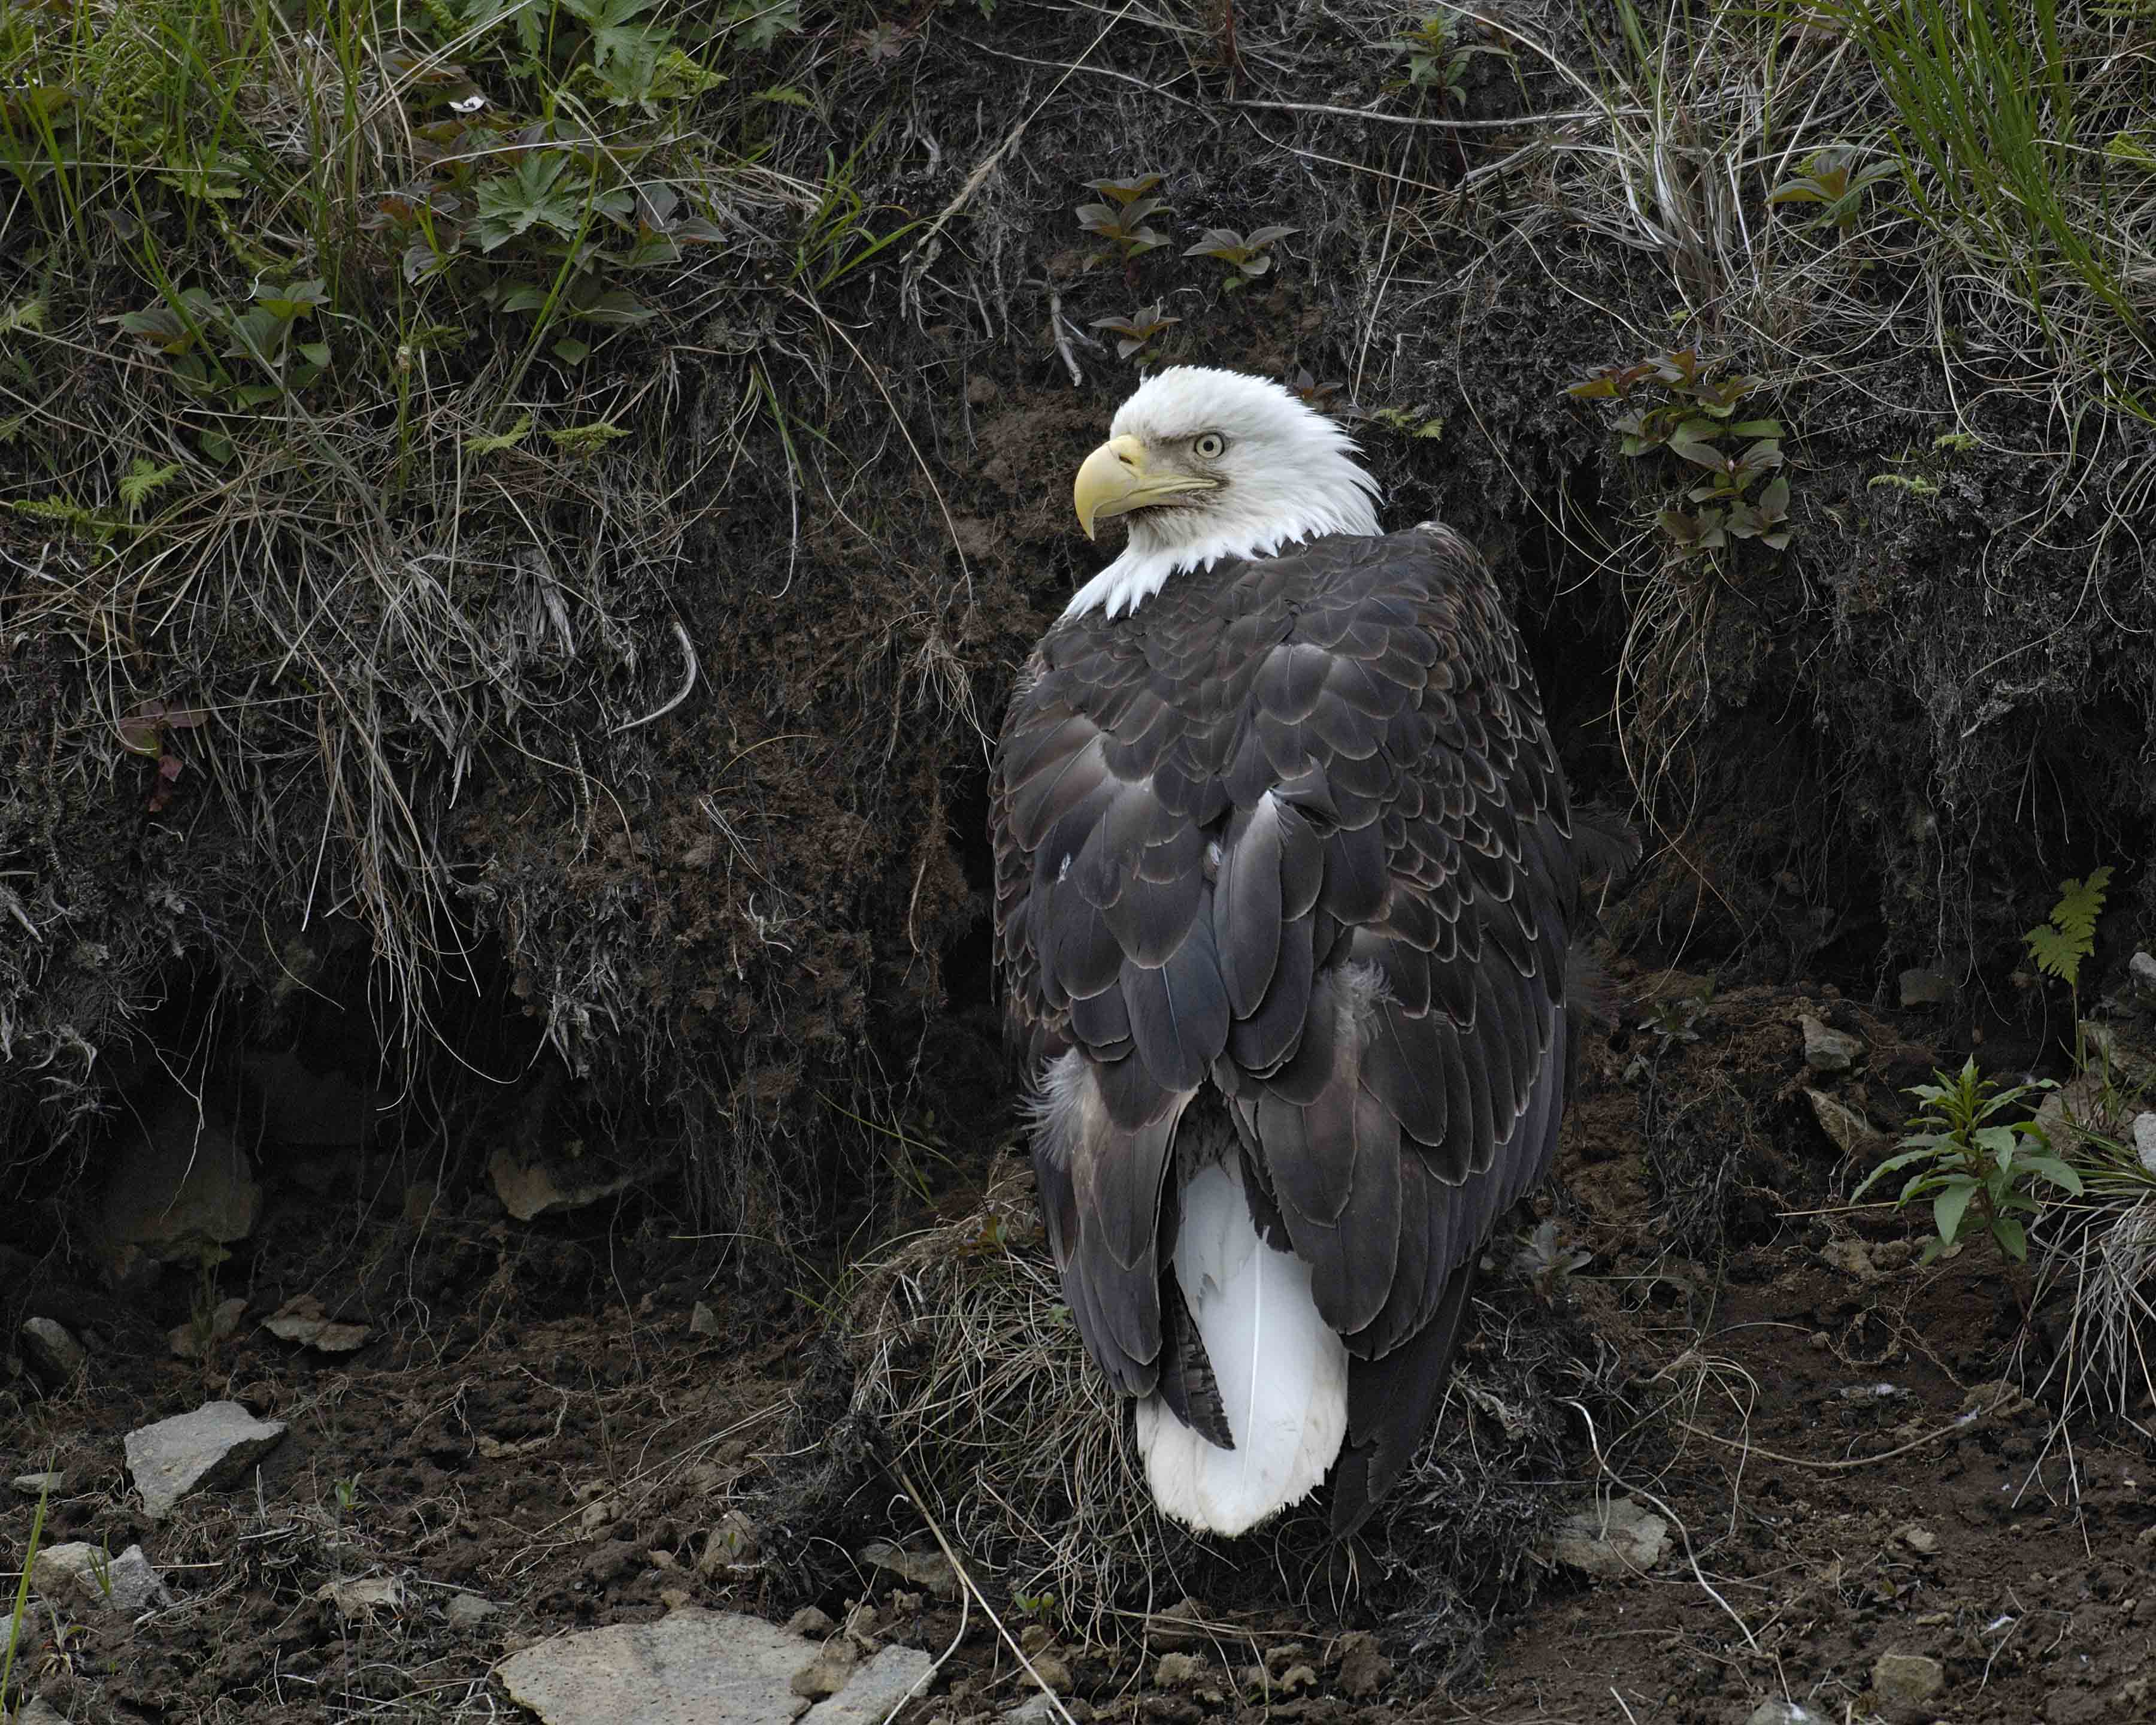 Eagle, Bald-071407-Iliuliuk Bay, Unalaska Island, AK-#0272.jpg photo ...